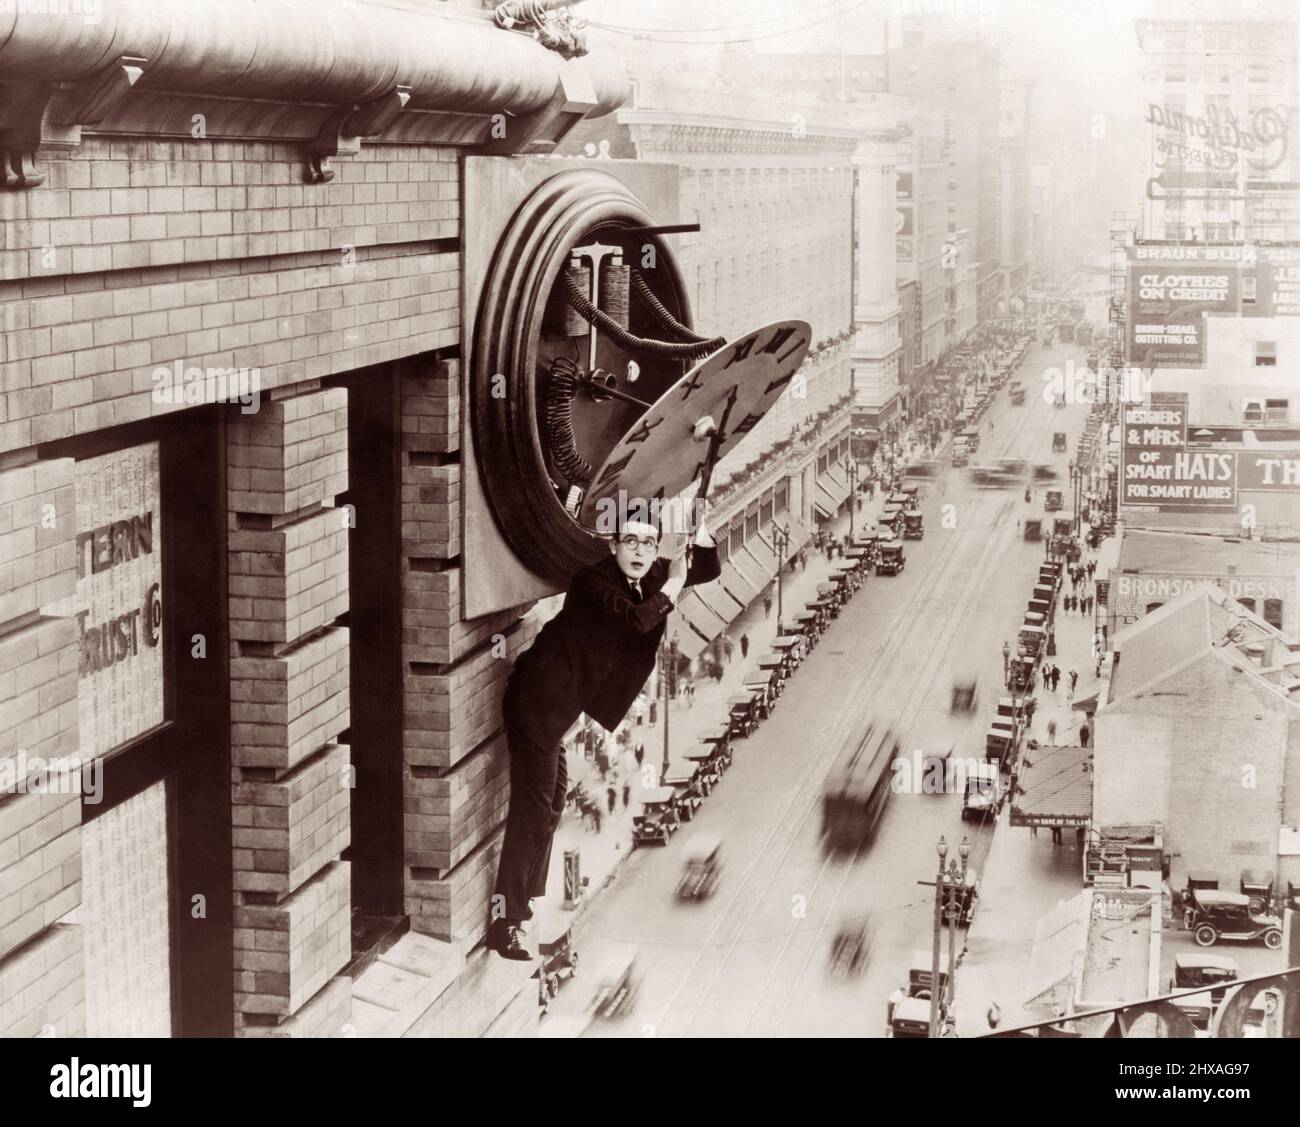 Der Schauspieler Harold Lloyd hängt an einer Bauuhr im amerikanischen Stummfilm Safety Last! Aus dem Jahr 1923. Stockfoto